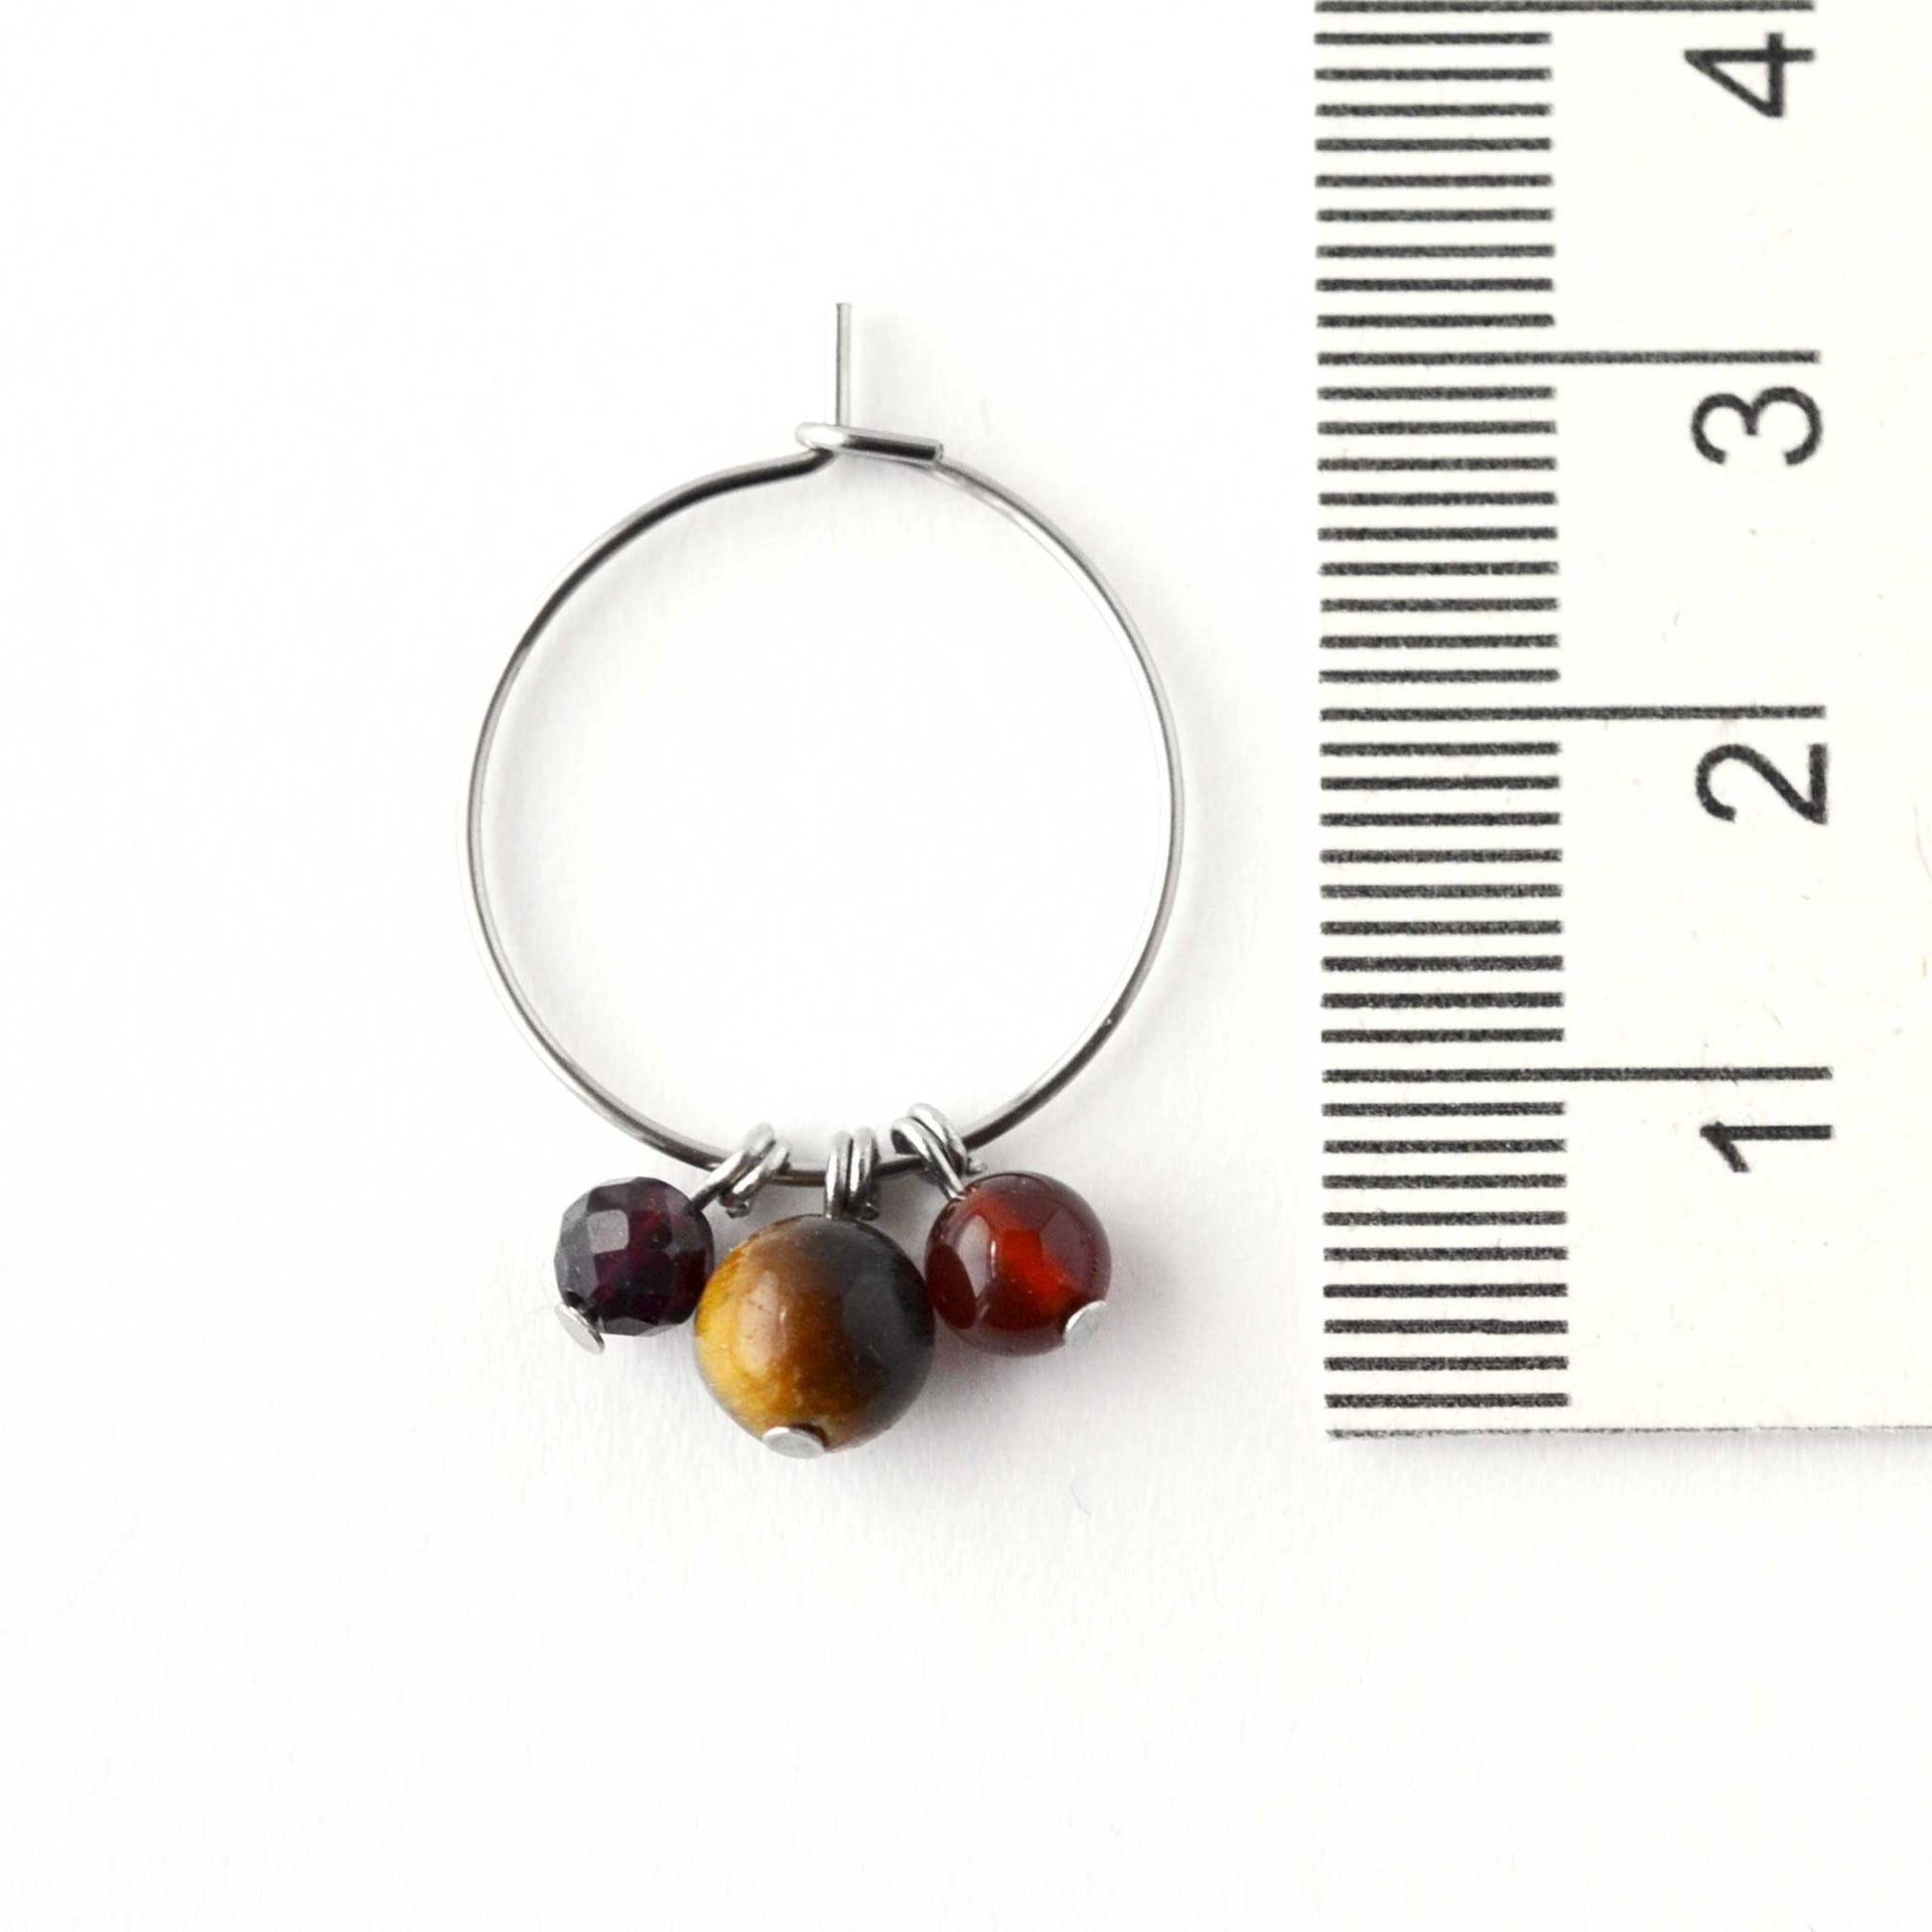 2cm diameter hoop earrings with dark gemstone beads next to ruler